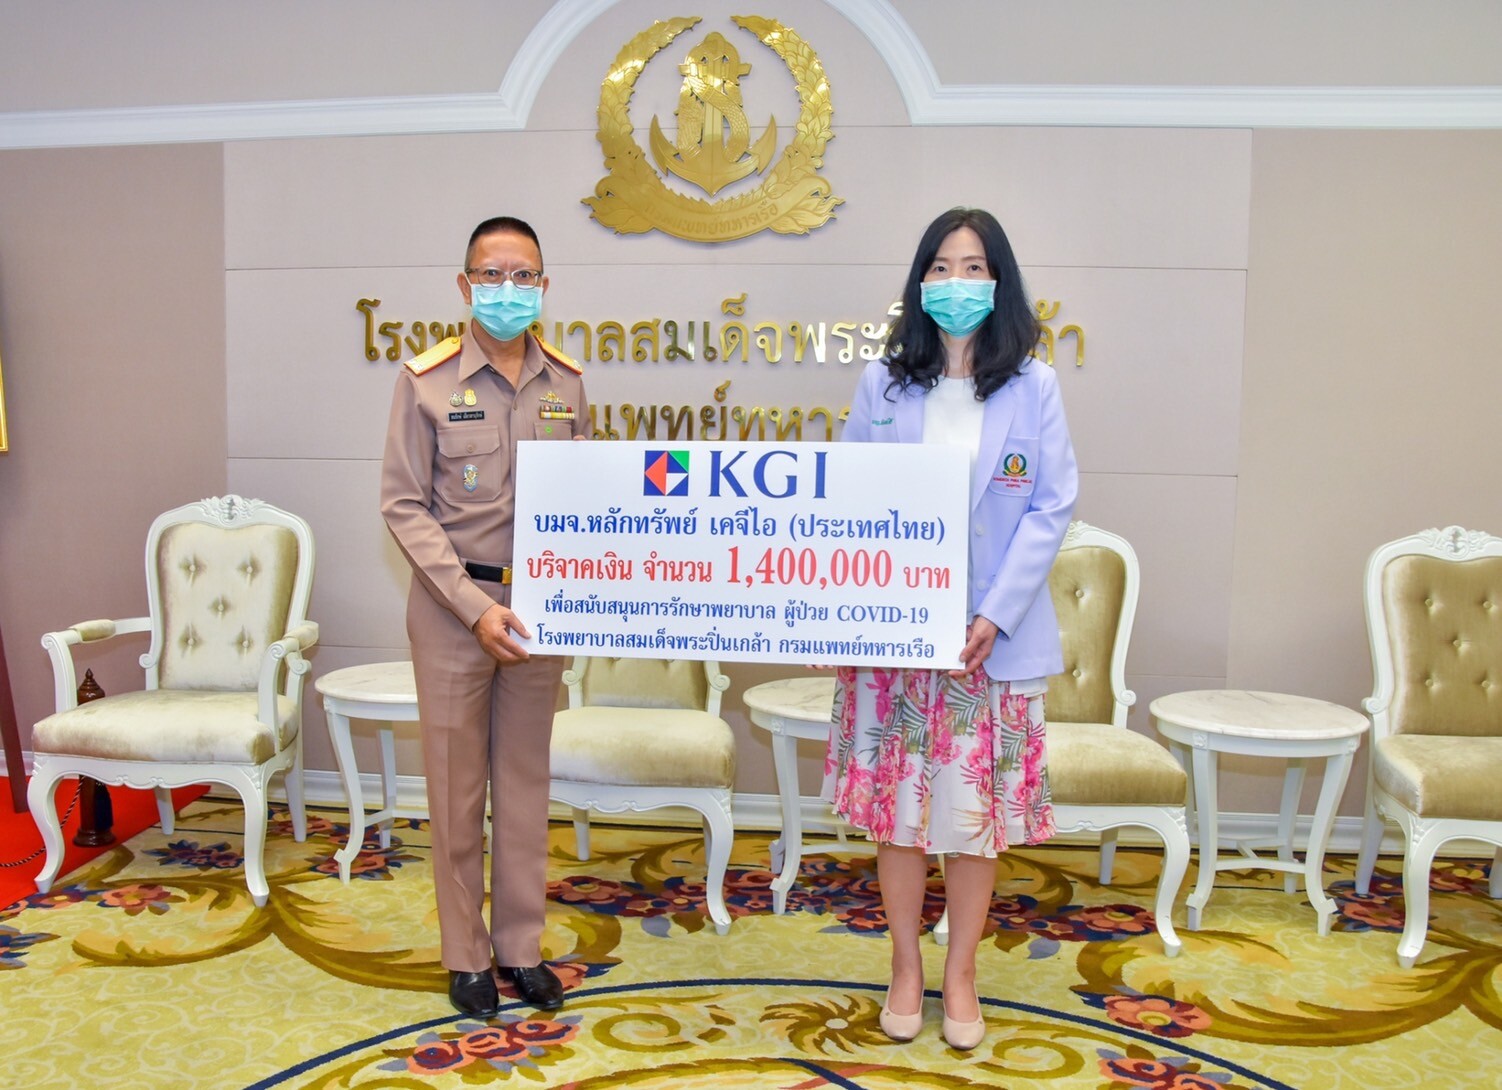 ภาพข่าว: KGI ร่วมสู้วิกฤติ COVID-19 มอบเงิน 1.4 ล้านบาท ให้กับ รพ.สมเด็จพระปิ่นเกล้า กรมแพทย์ทหารเรือ